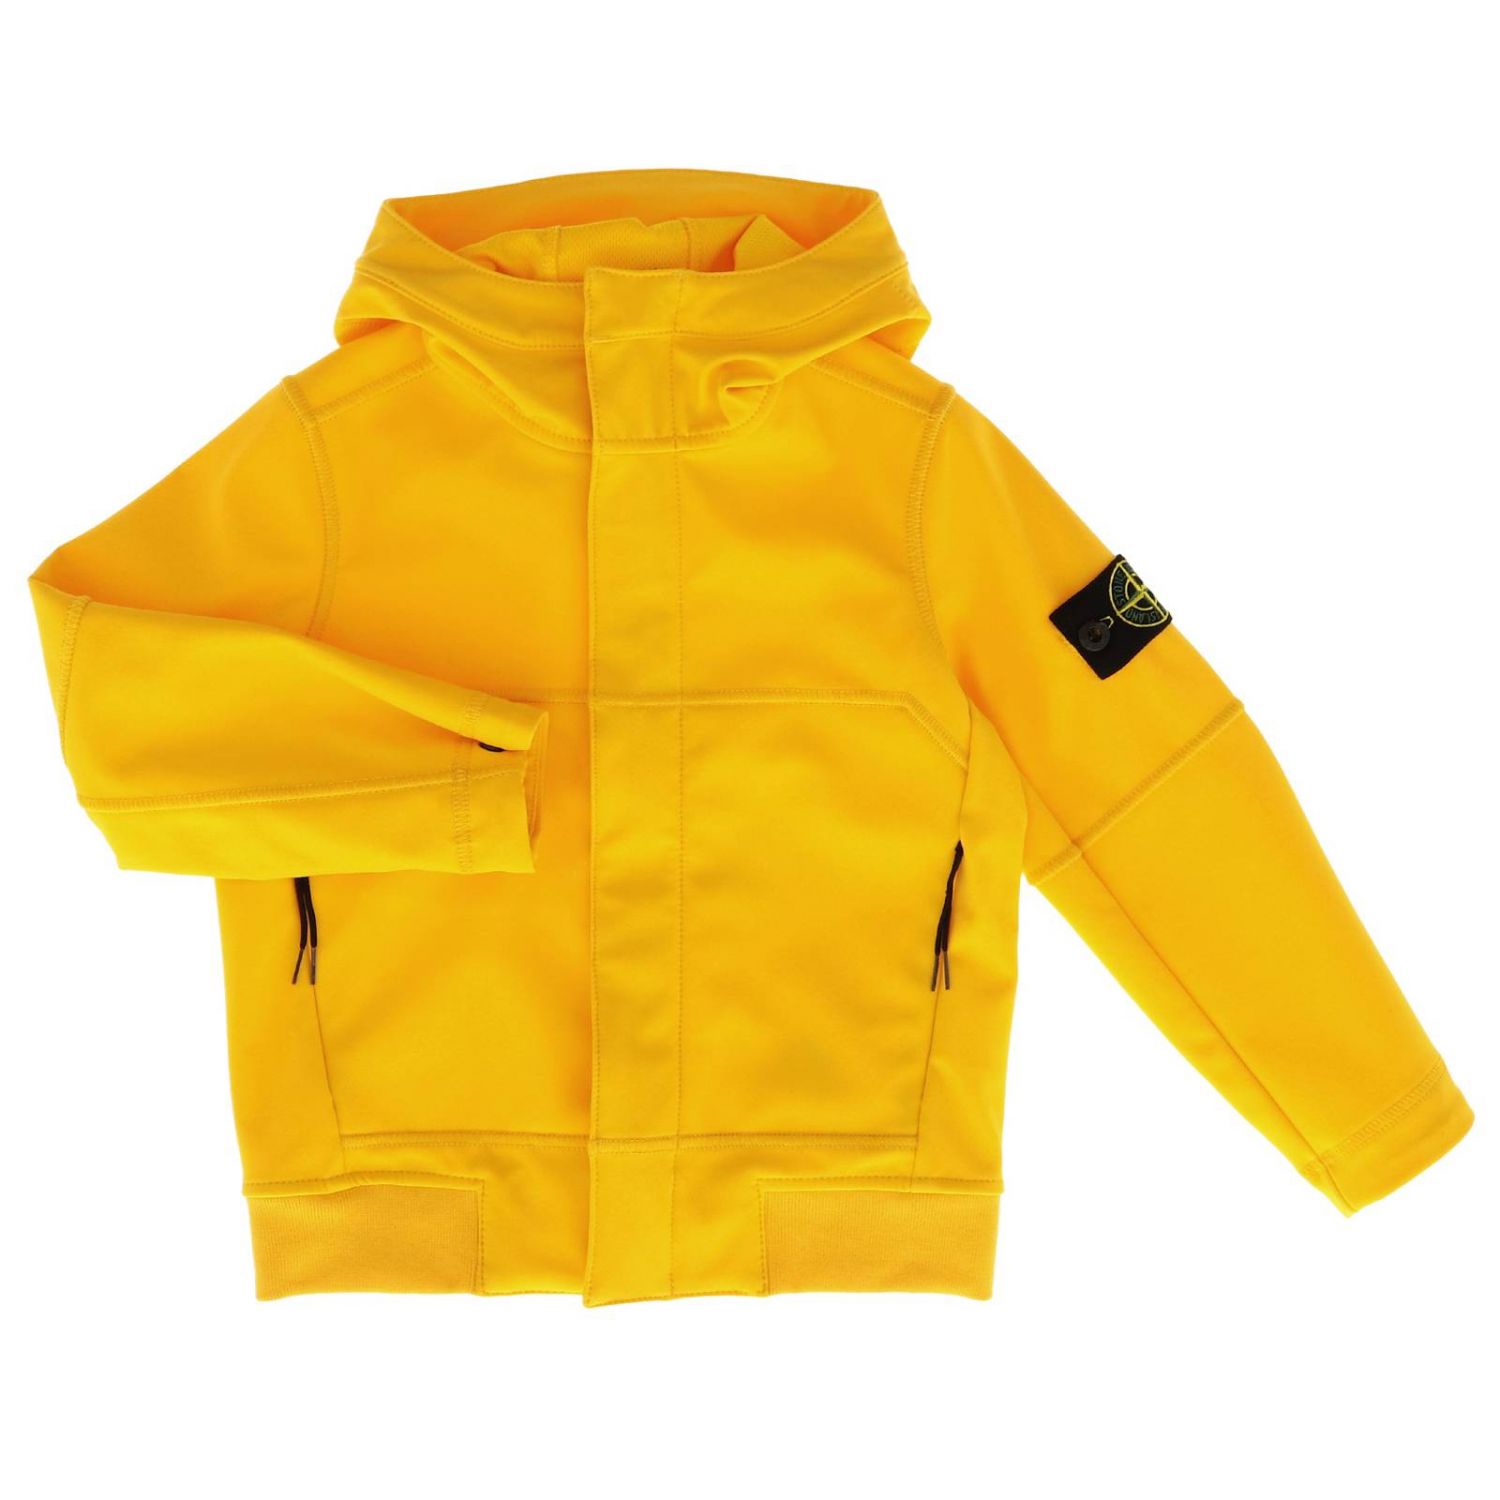 Island junior. Куртки стон Исланд детская. Stone Island Yellow Jacket. Stone Island детская куртка. Куртка Stone Island желтый.